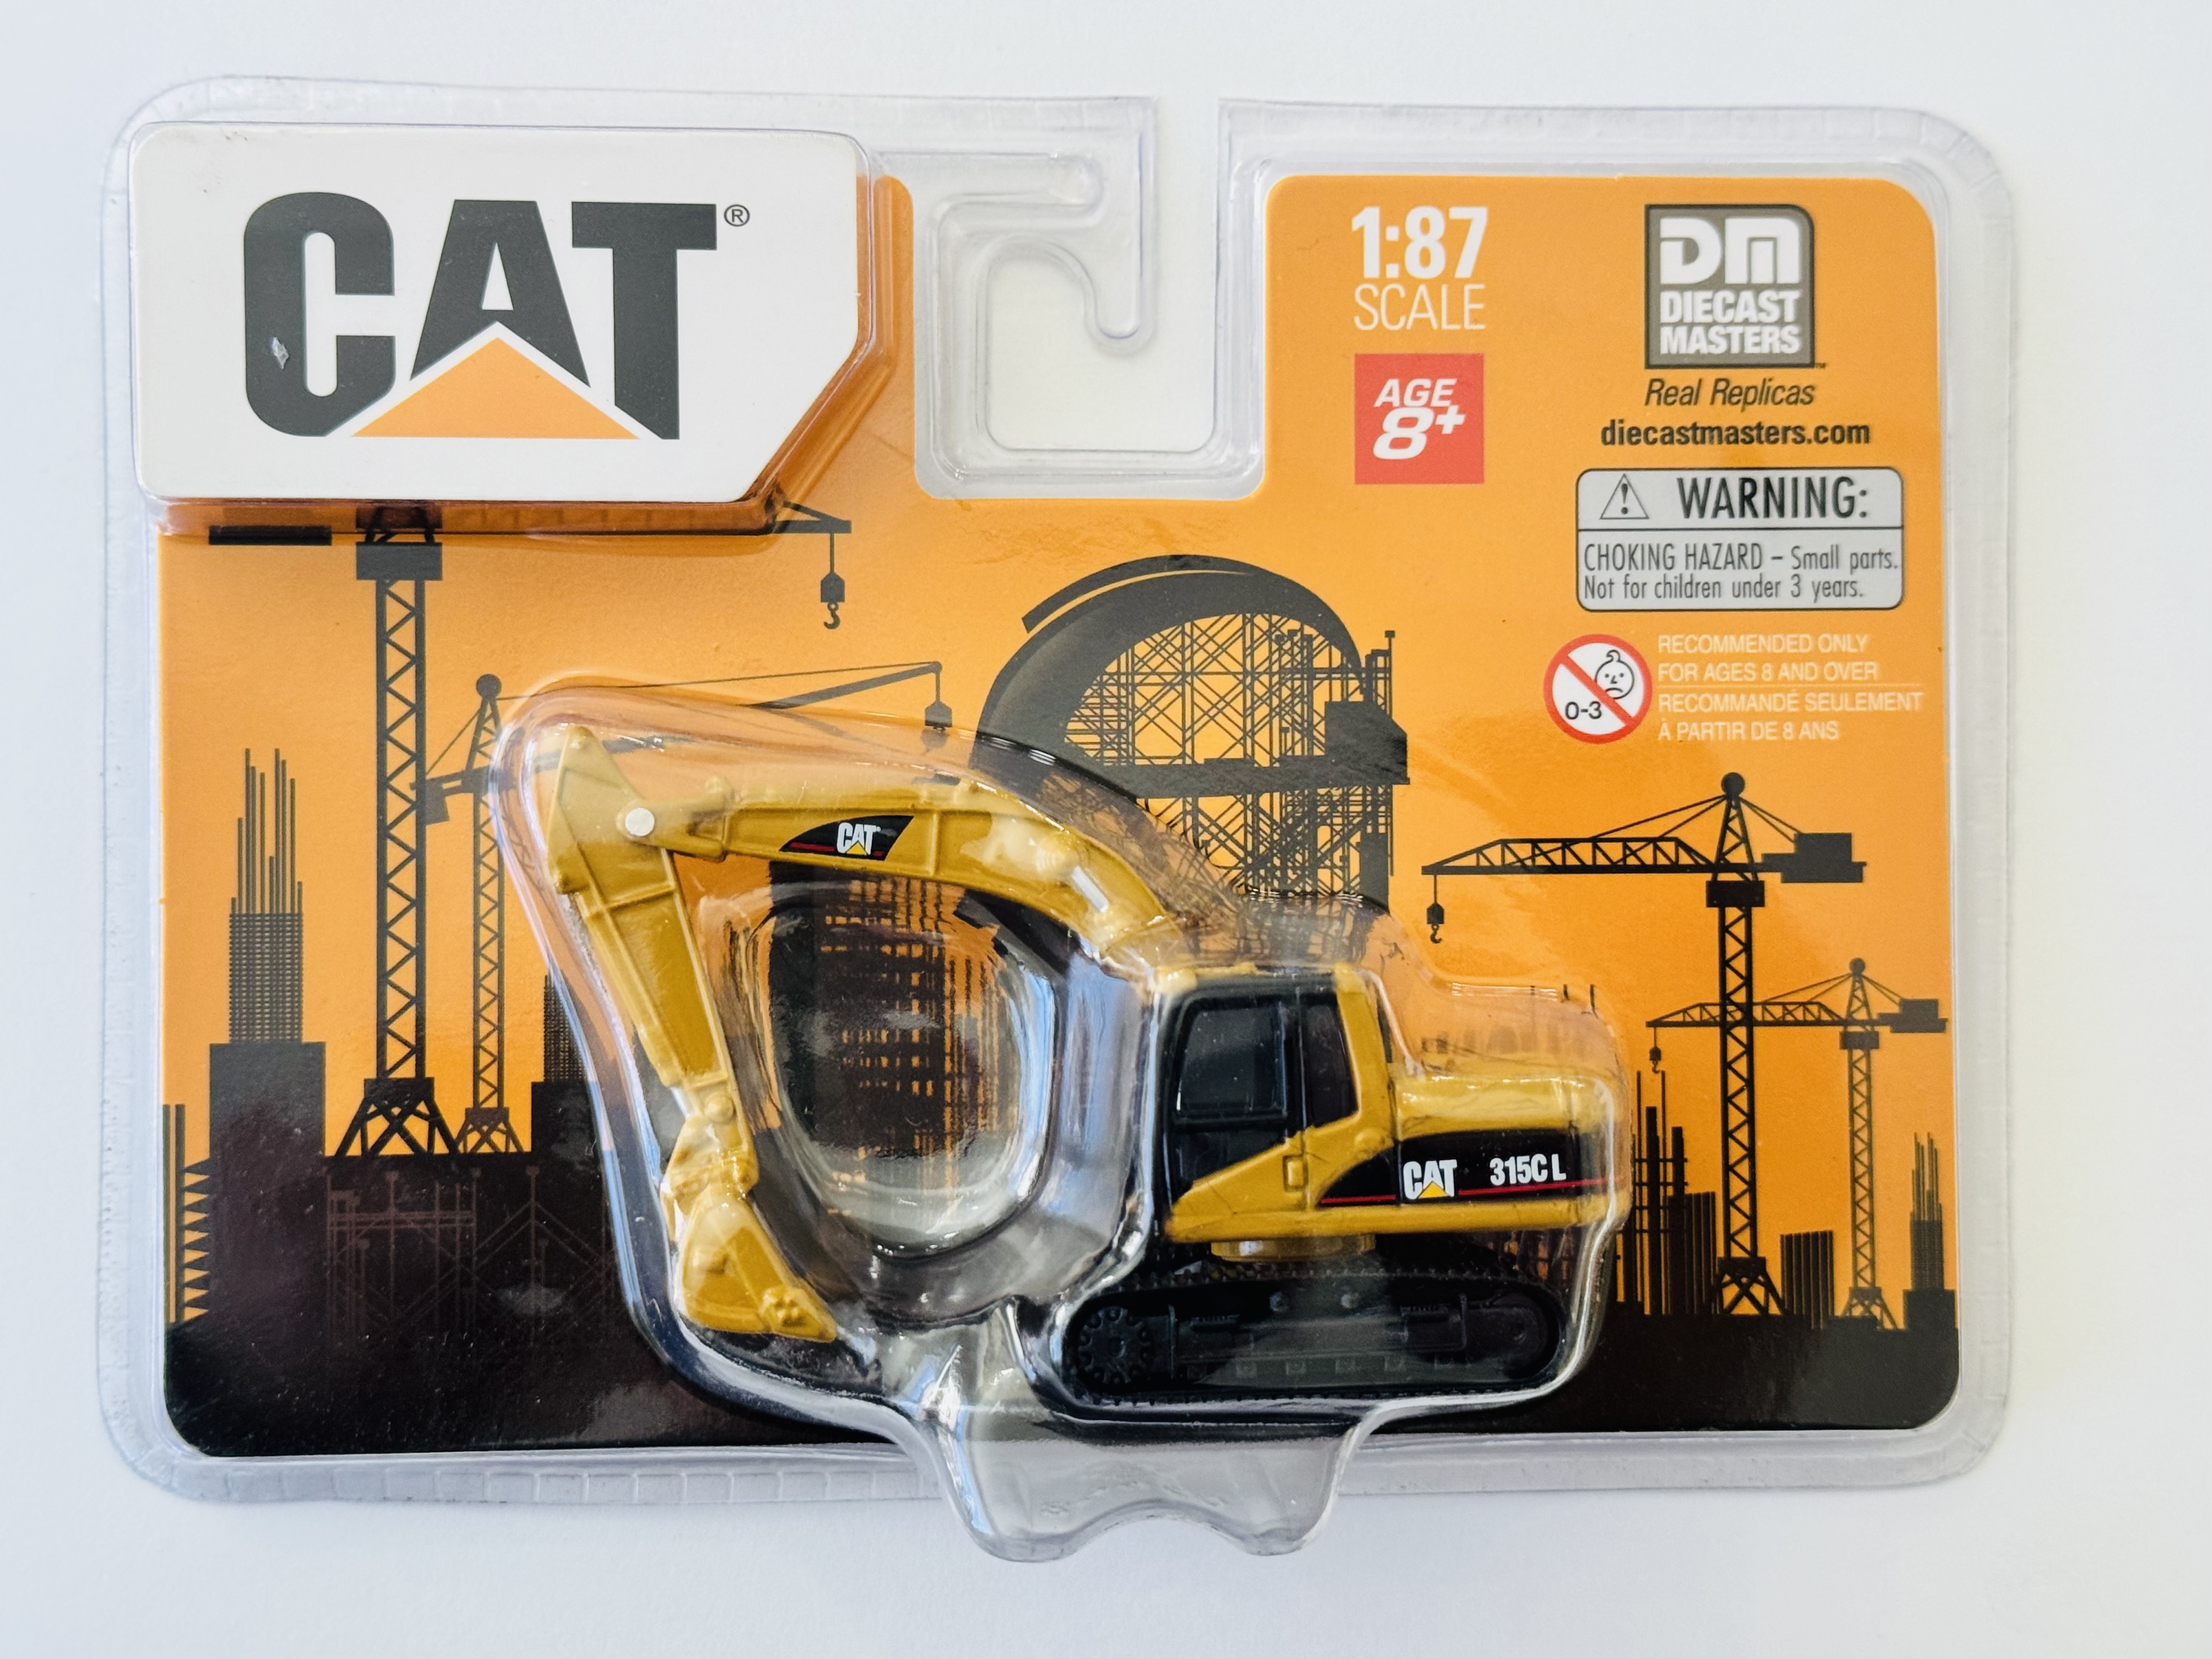 DM Diecast Masters CAT 1:87 Scale CAT 315C L Hydraulic Excavator